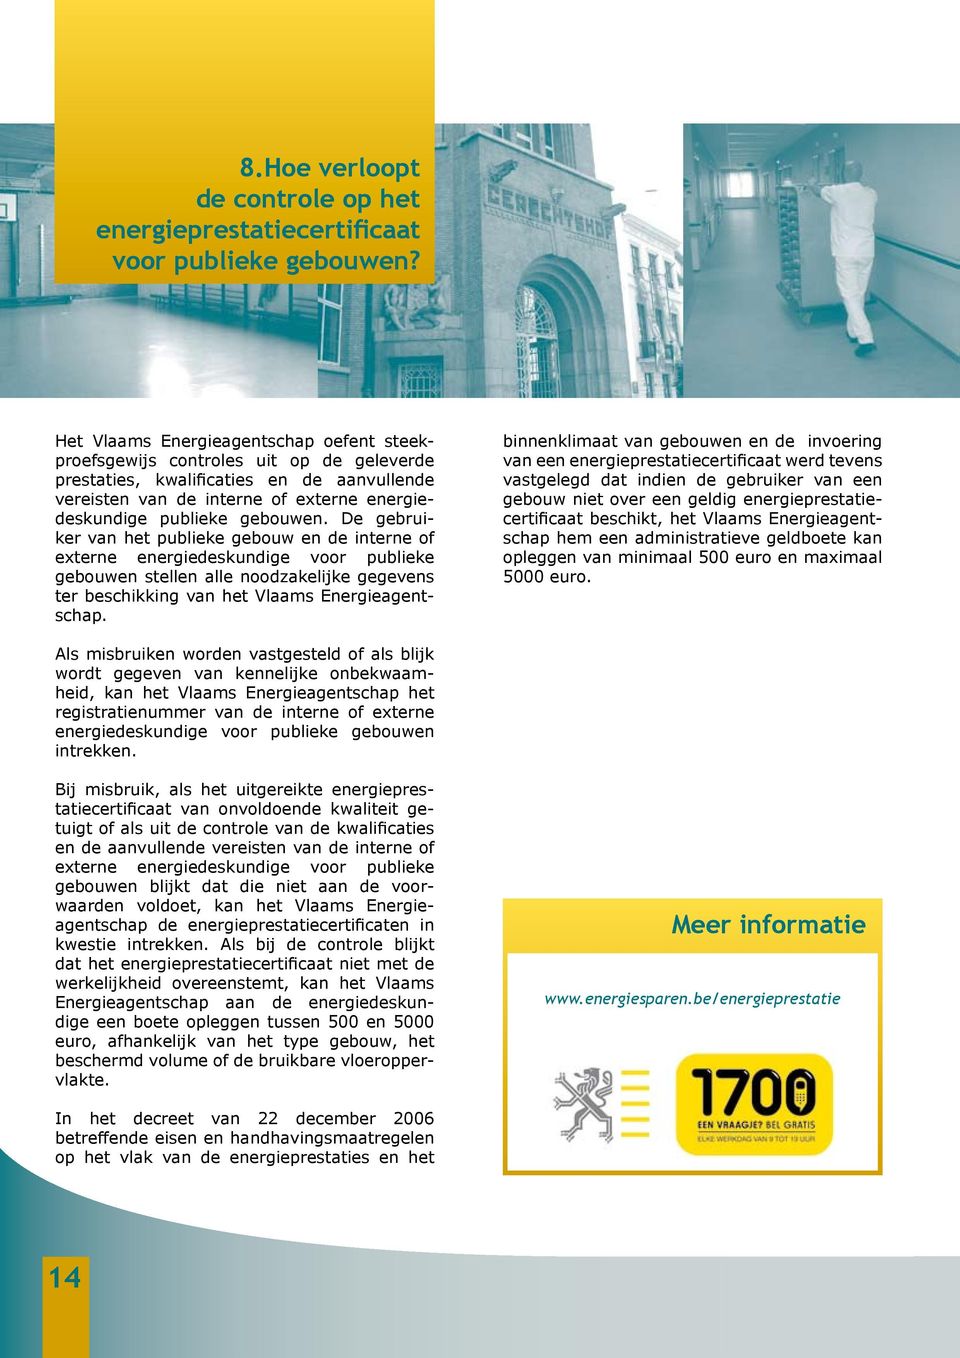 De gebruiker van het publieke gebouw en de interne of externe energiedeskundige voor publieke gebouwen stellen alle noodzakelijke gegevens ter beschikking van het Vlaams Energieagentschap.